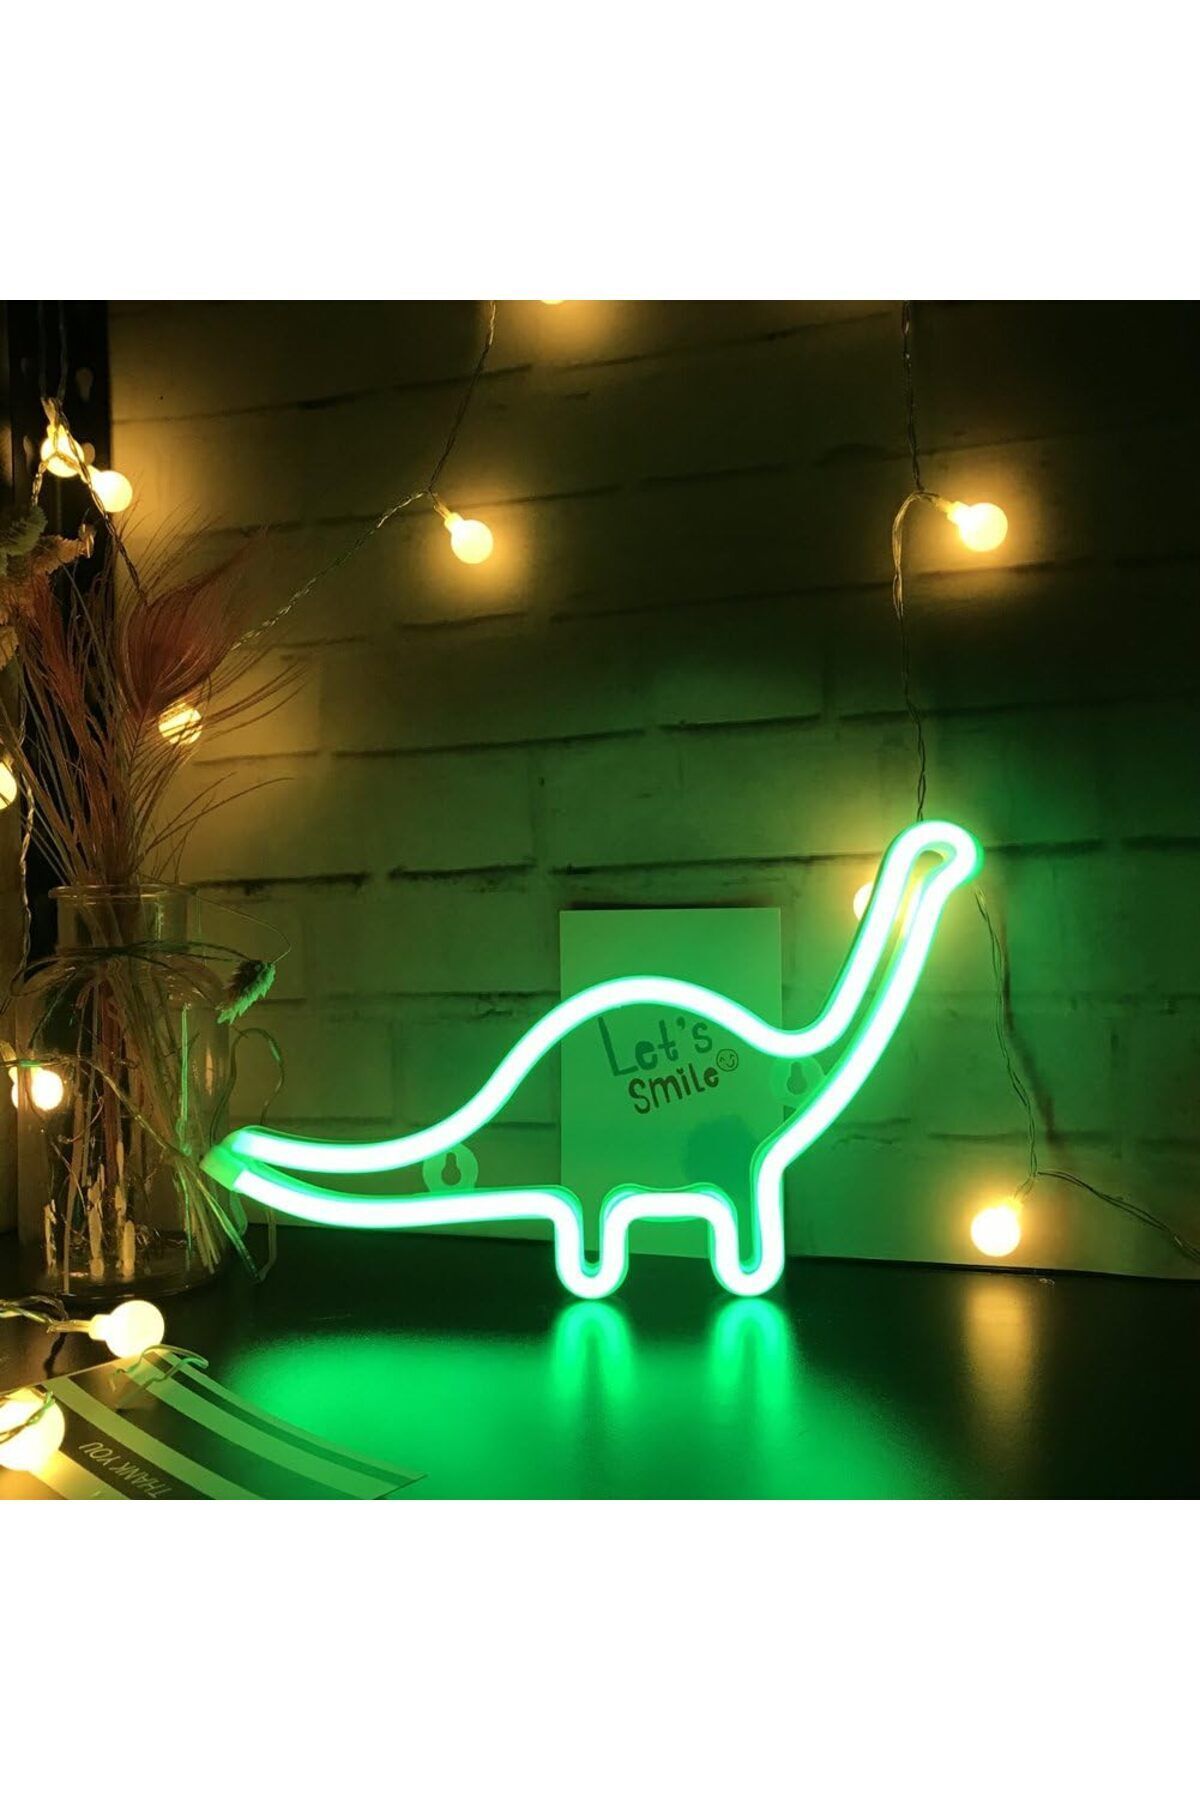 Winnie Baby Büyük Boy Pilli Dinazor Neon Yeşil Renkli Led Işıklı Masa Ve Gece Lambası Dekoratif Aydınlatma